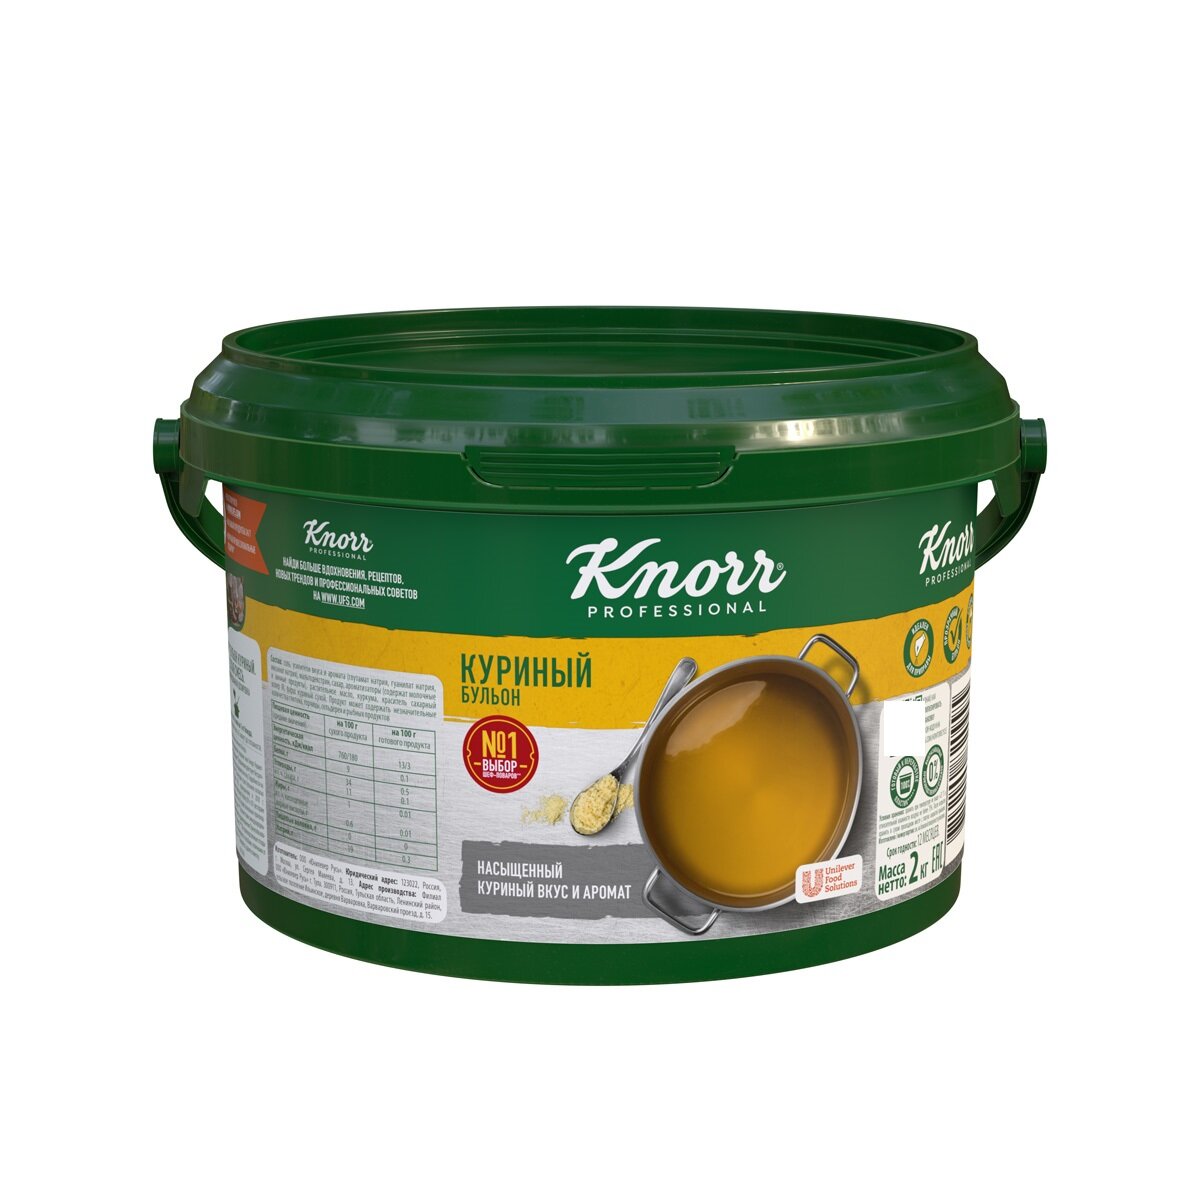 Бульон куриный 2 кг Knorr professional сухая смесь, 1 шт